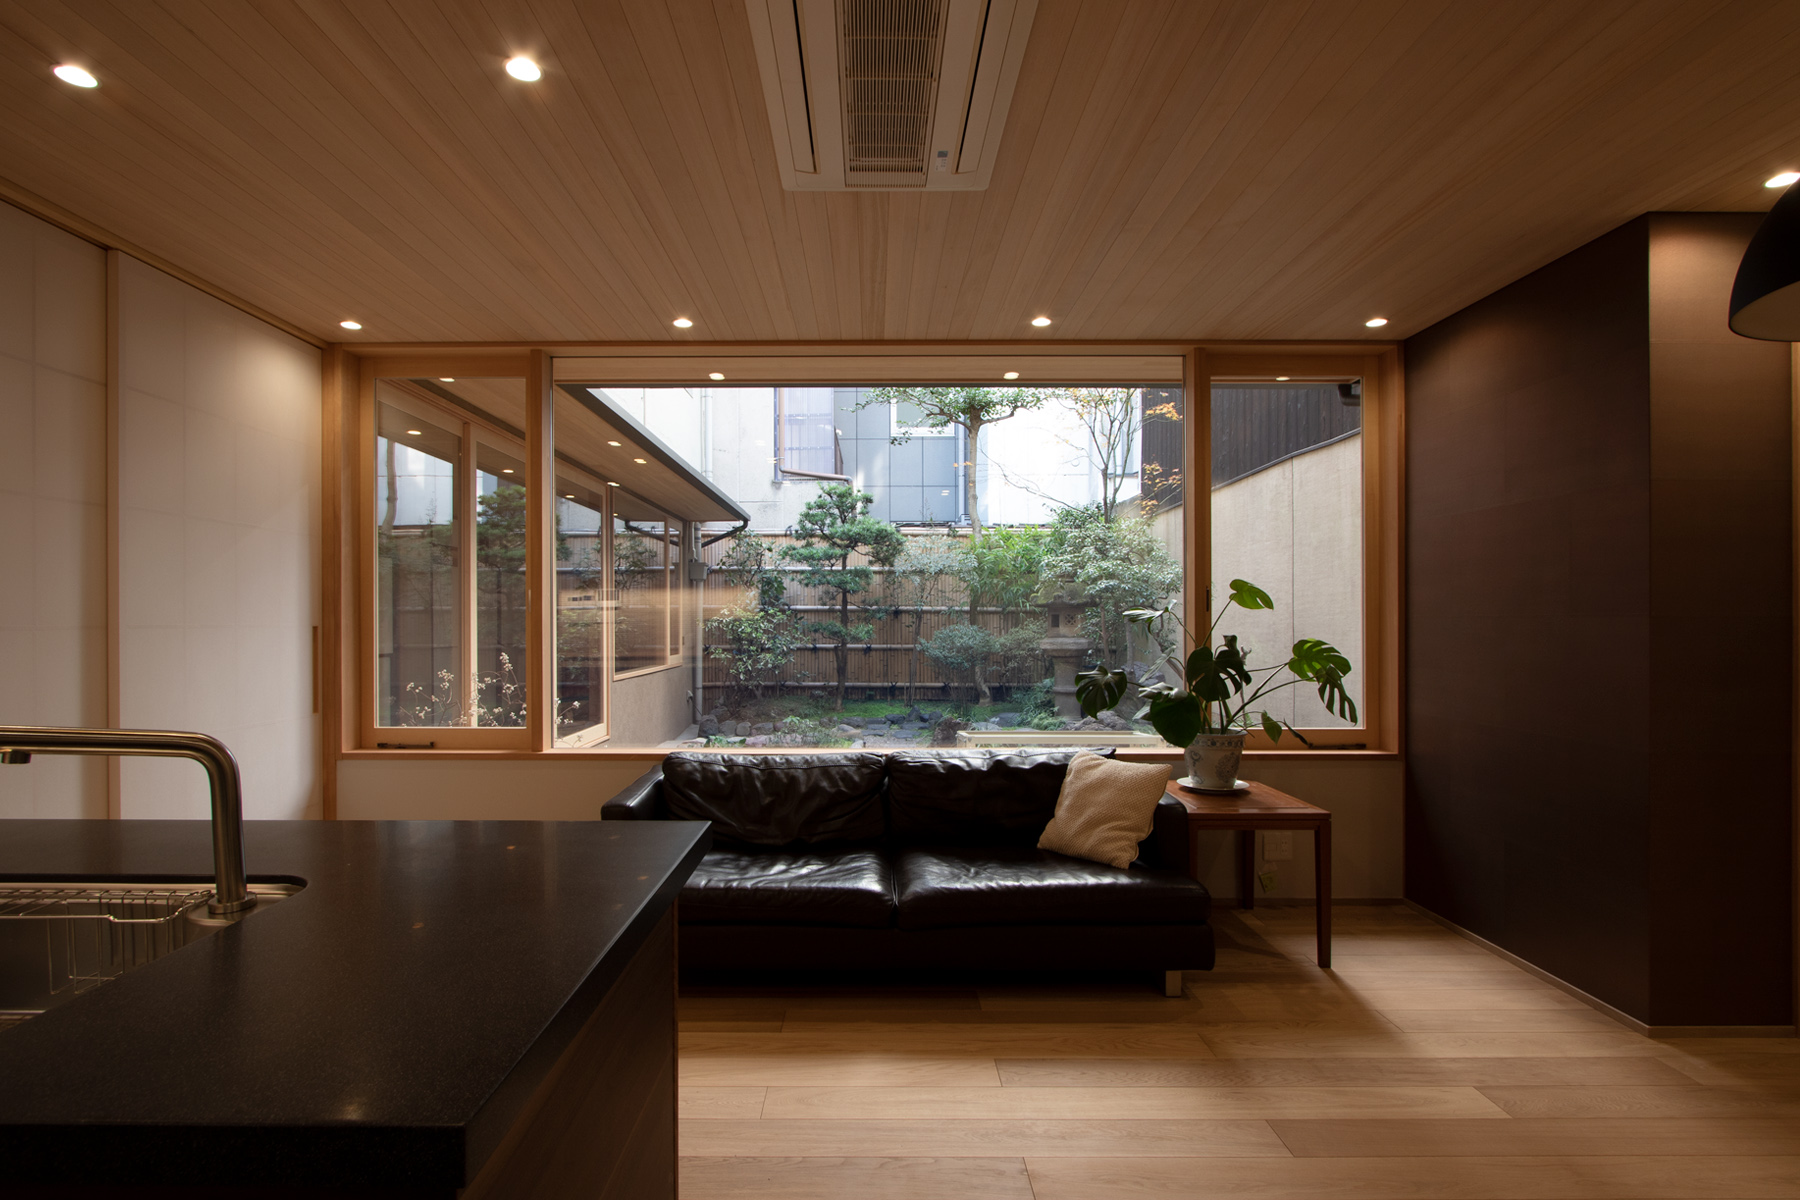 お庭を眺められる広々としたキッチン。暮らしを楽しむ スローライフ 空間 京都の庭